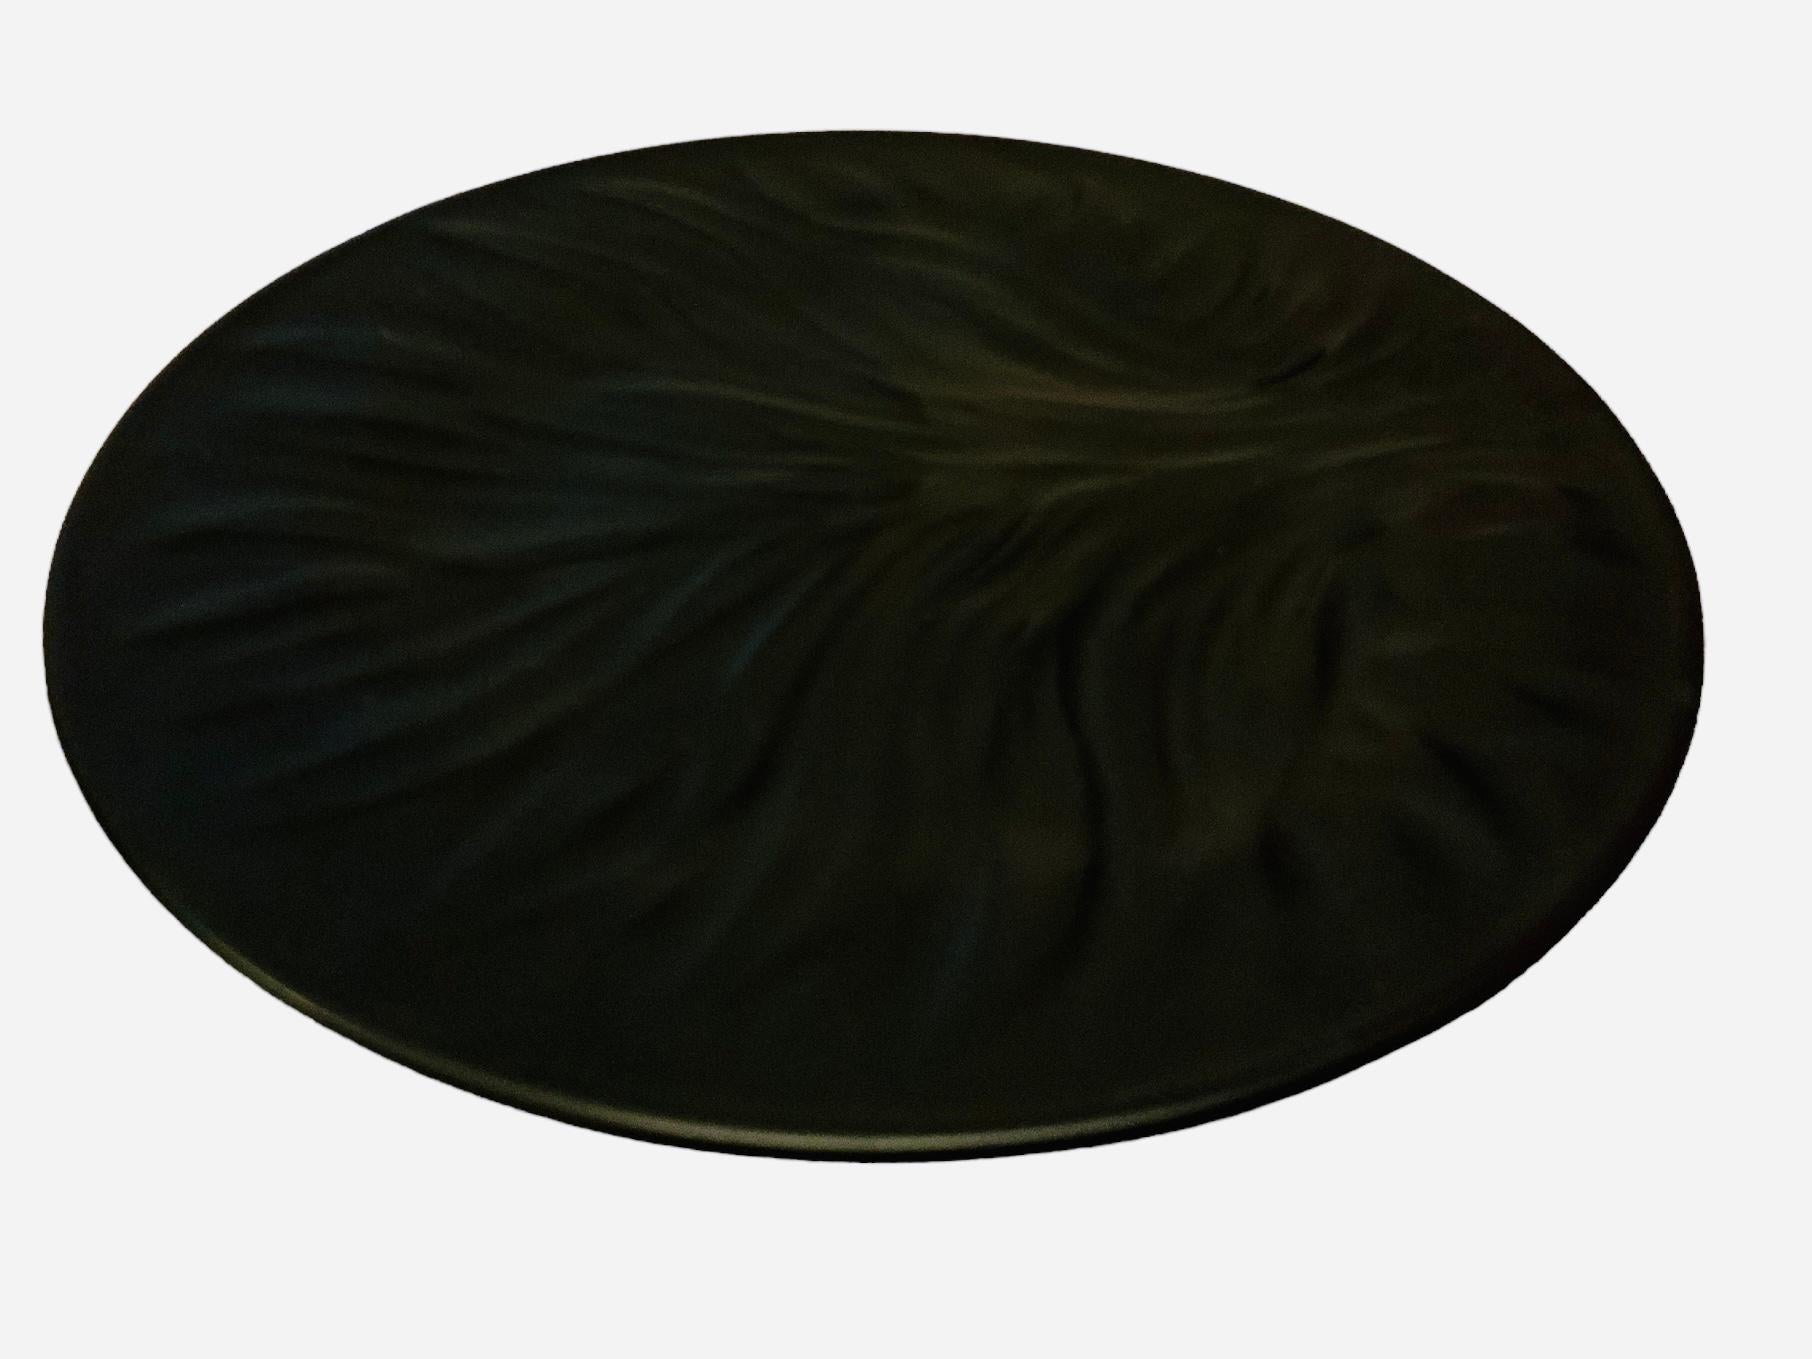 Dies ist ein Lalique Schwarz Kristall Baum des Lebens Teller. Es zeigt eine runde Platte in schwarzem, gefrostetem Kristall, in deren Mitte ein großer Lebensbaum eingraviert ist. Auf der Rückseite befindet sich die geätzte Punze von Lalique.